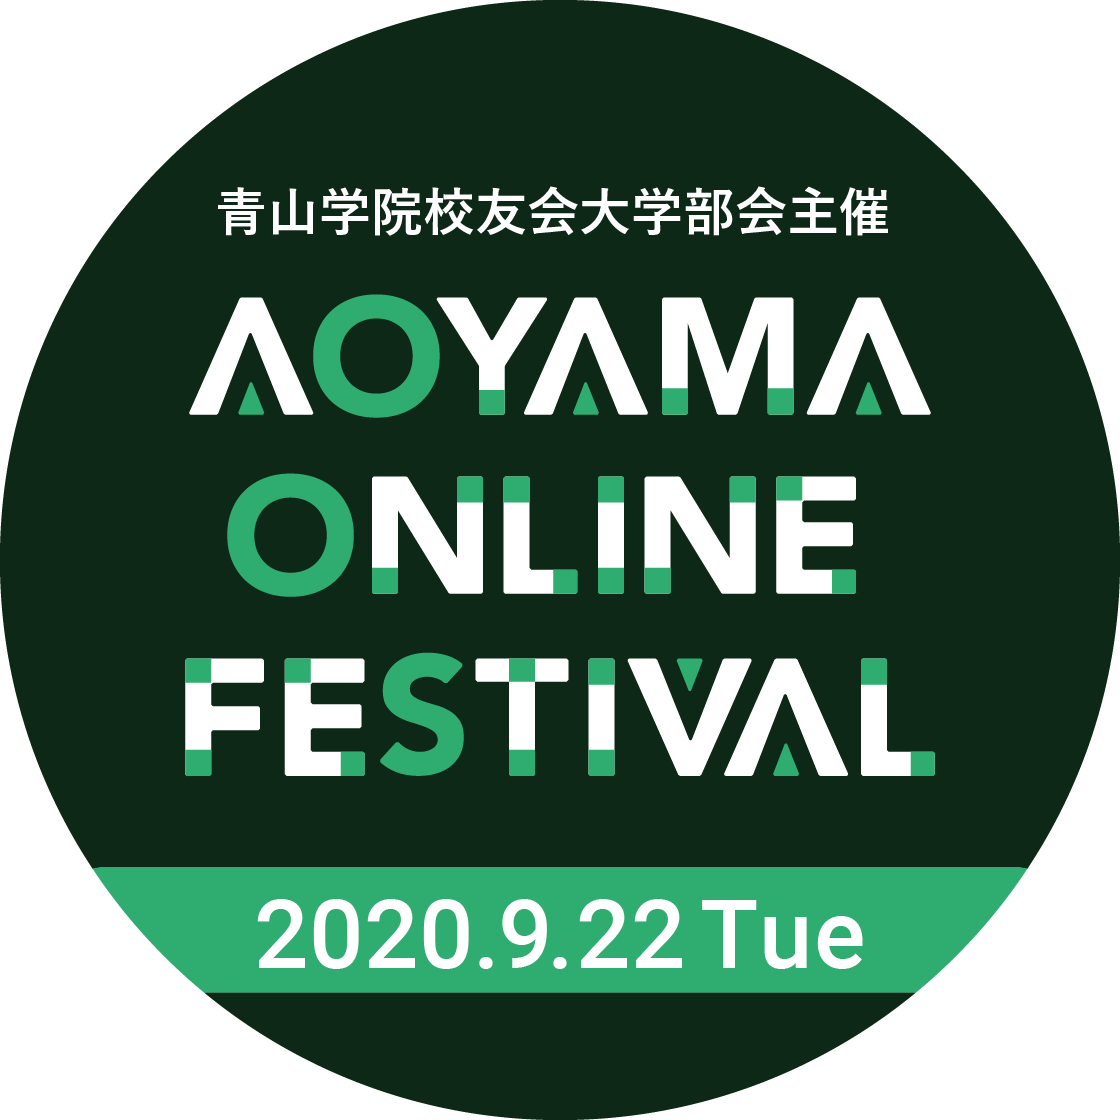 青山学院校友会大学部会主催 AOYAMA ONLINE FESTIVAL